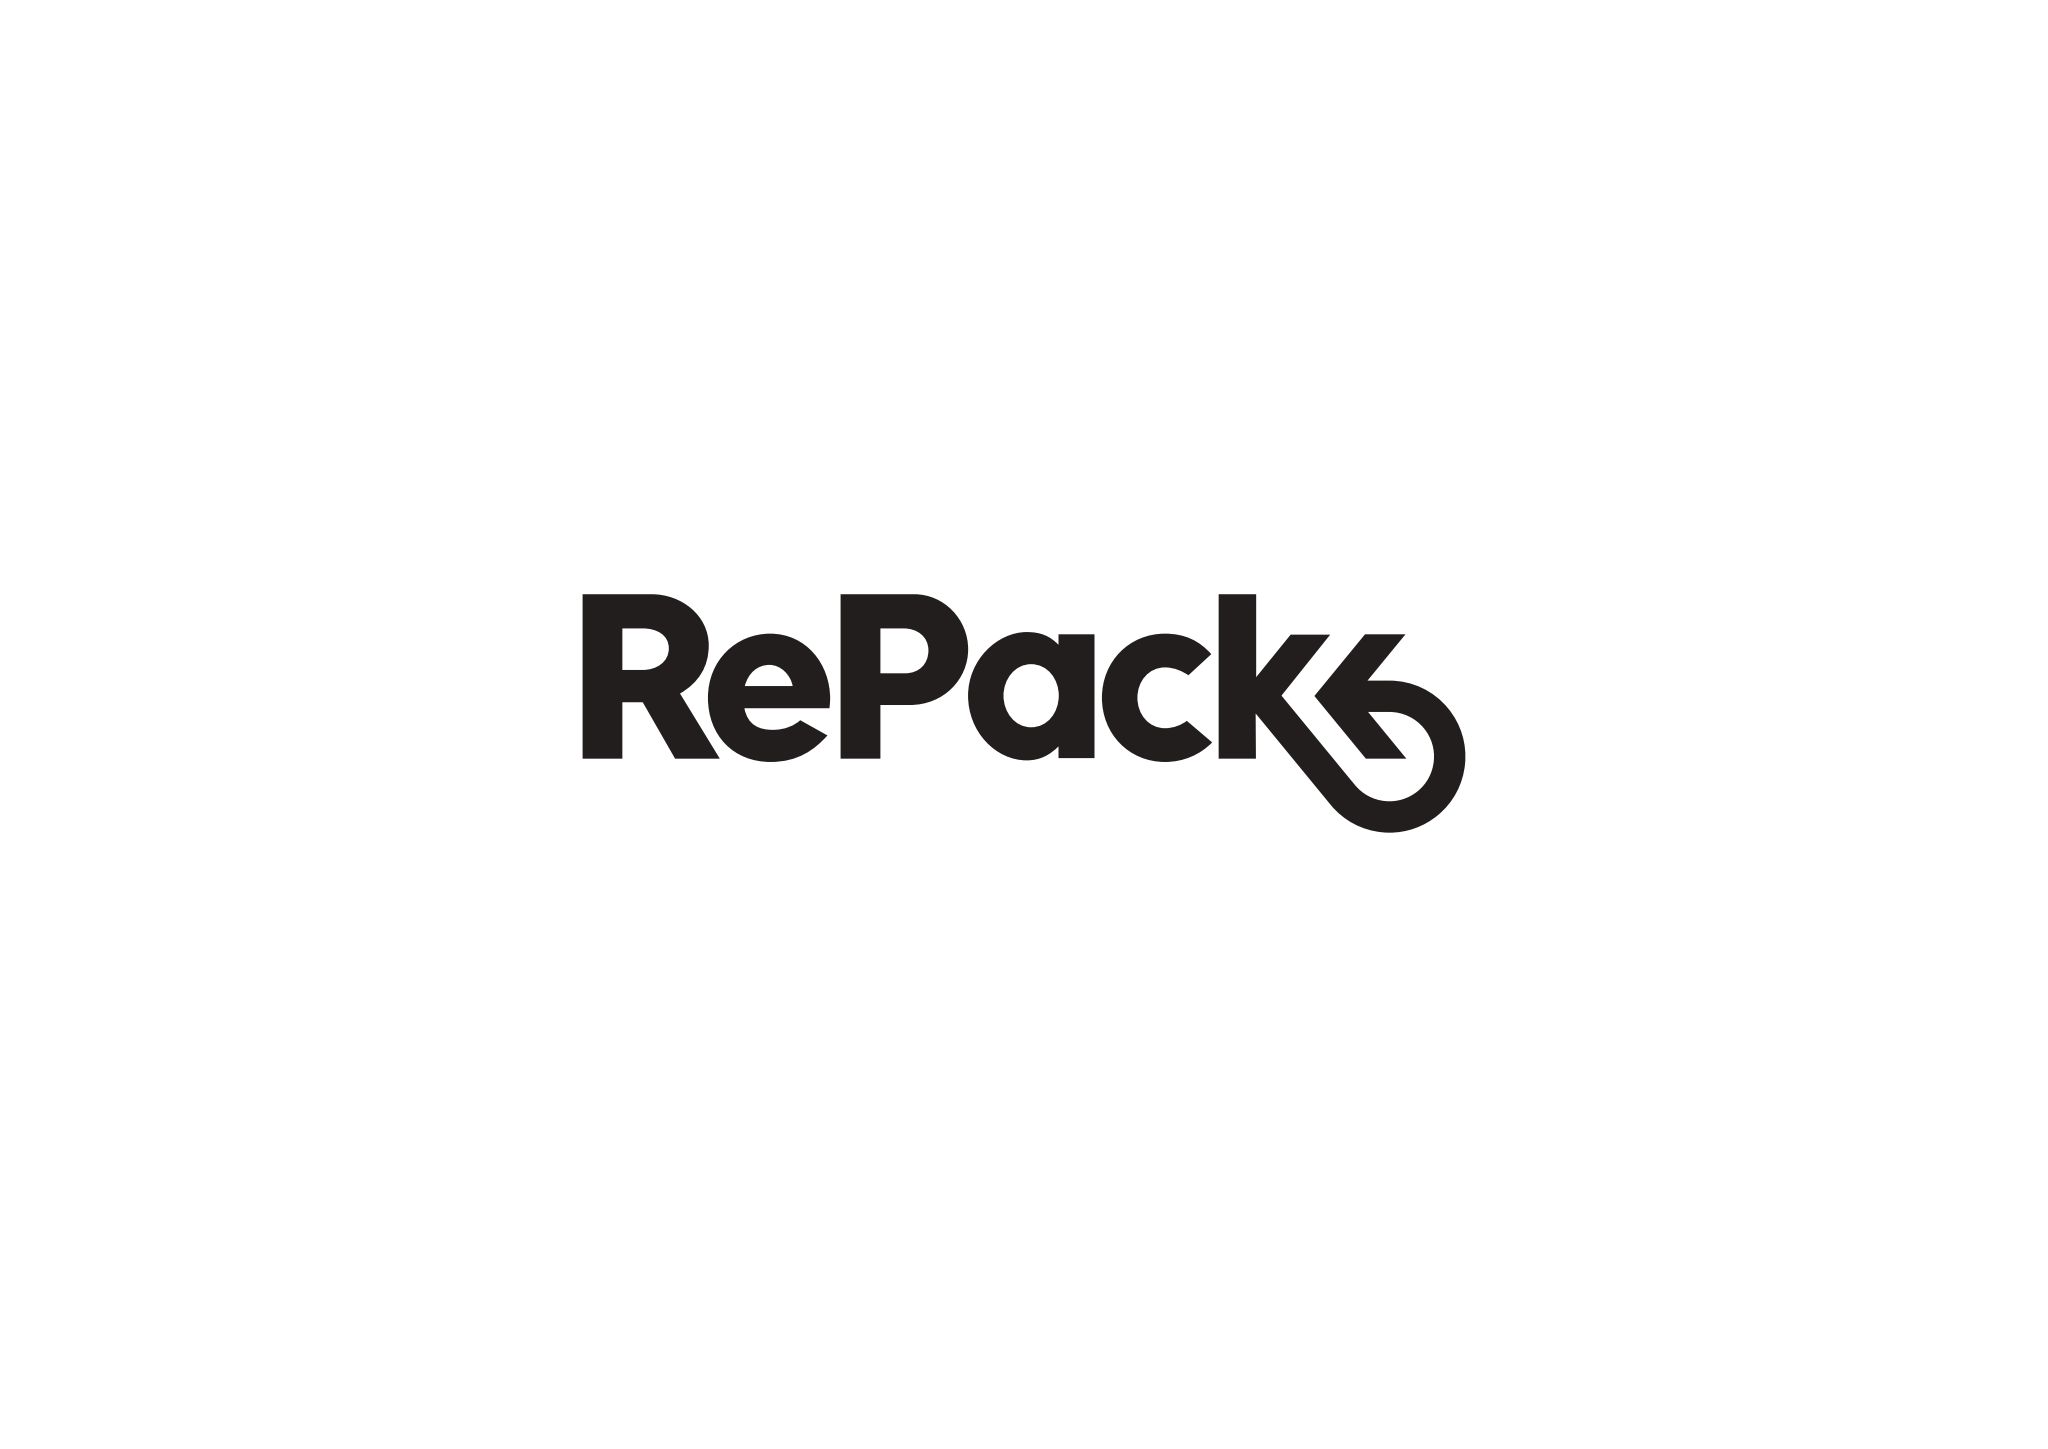 RePack.LOGO_black_simple